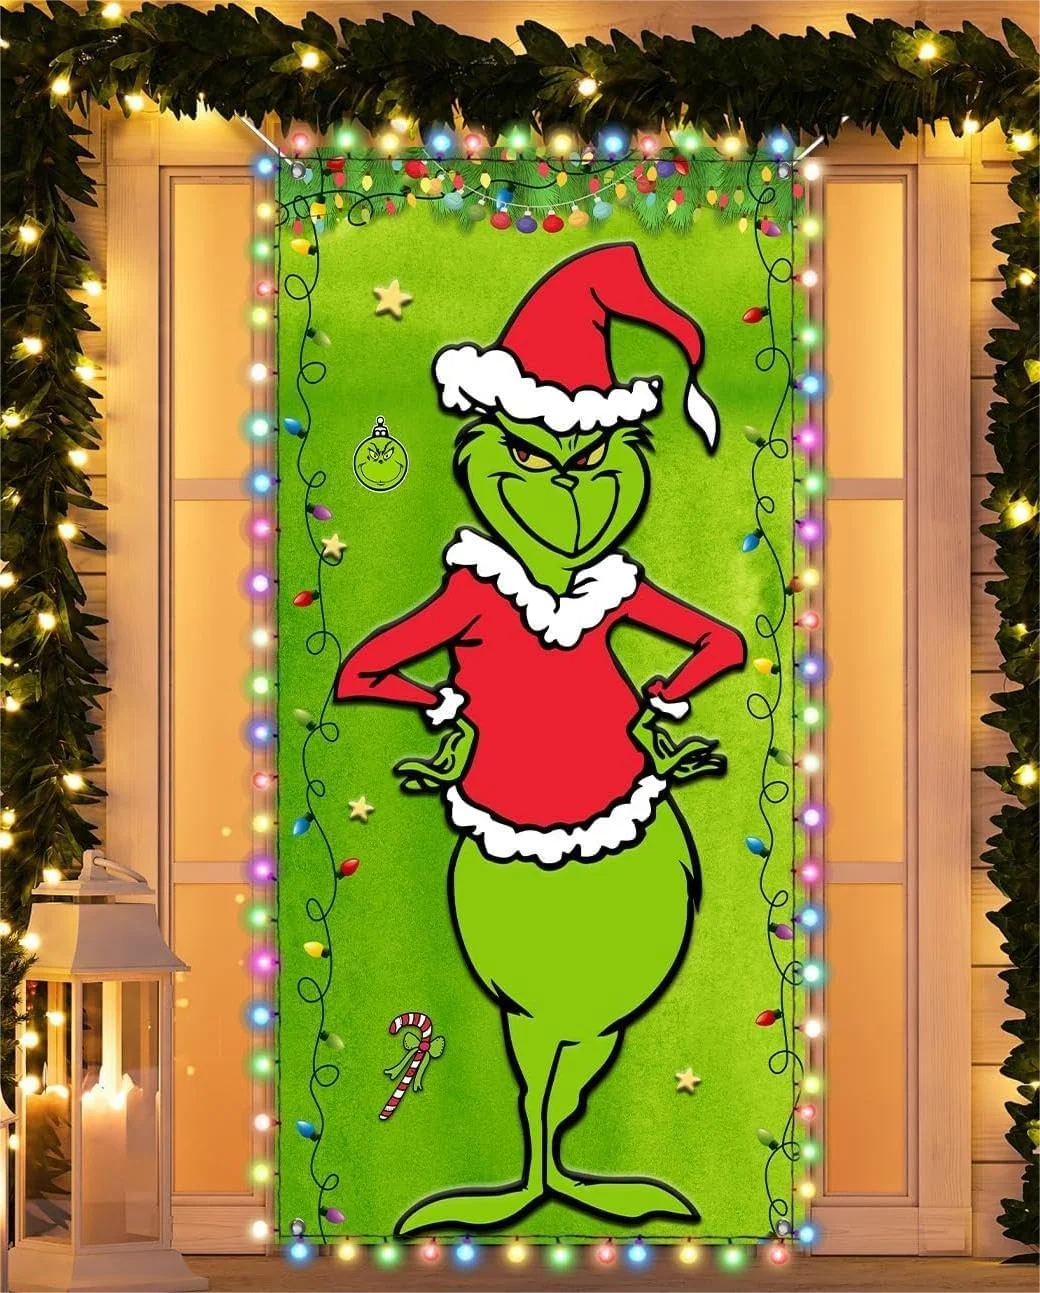 Christmas Door Covers - Outdoor Christmas Decorations - Front Door Decor - Holiday Door Covers